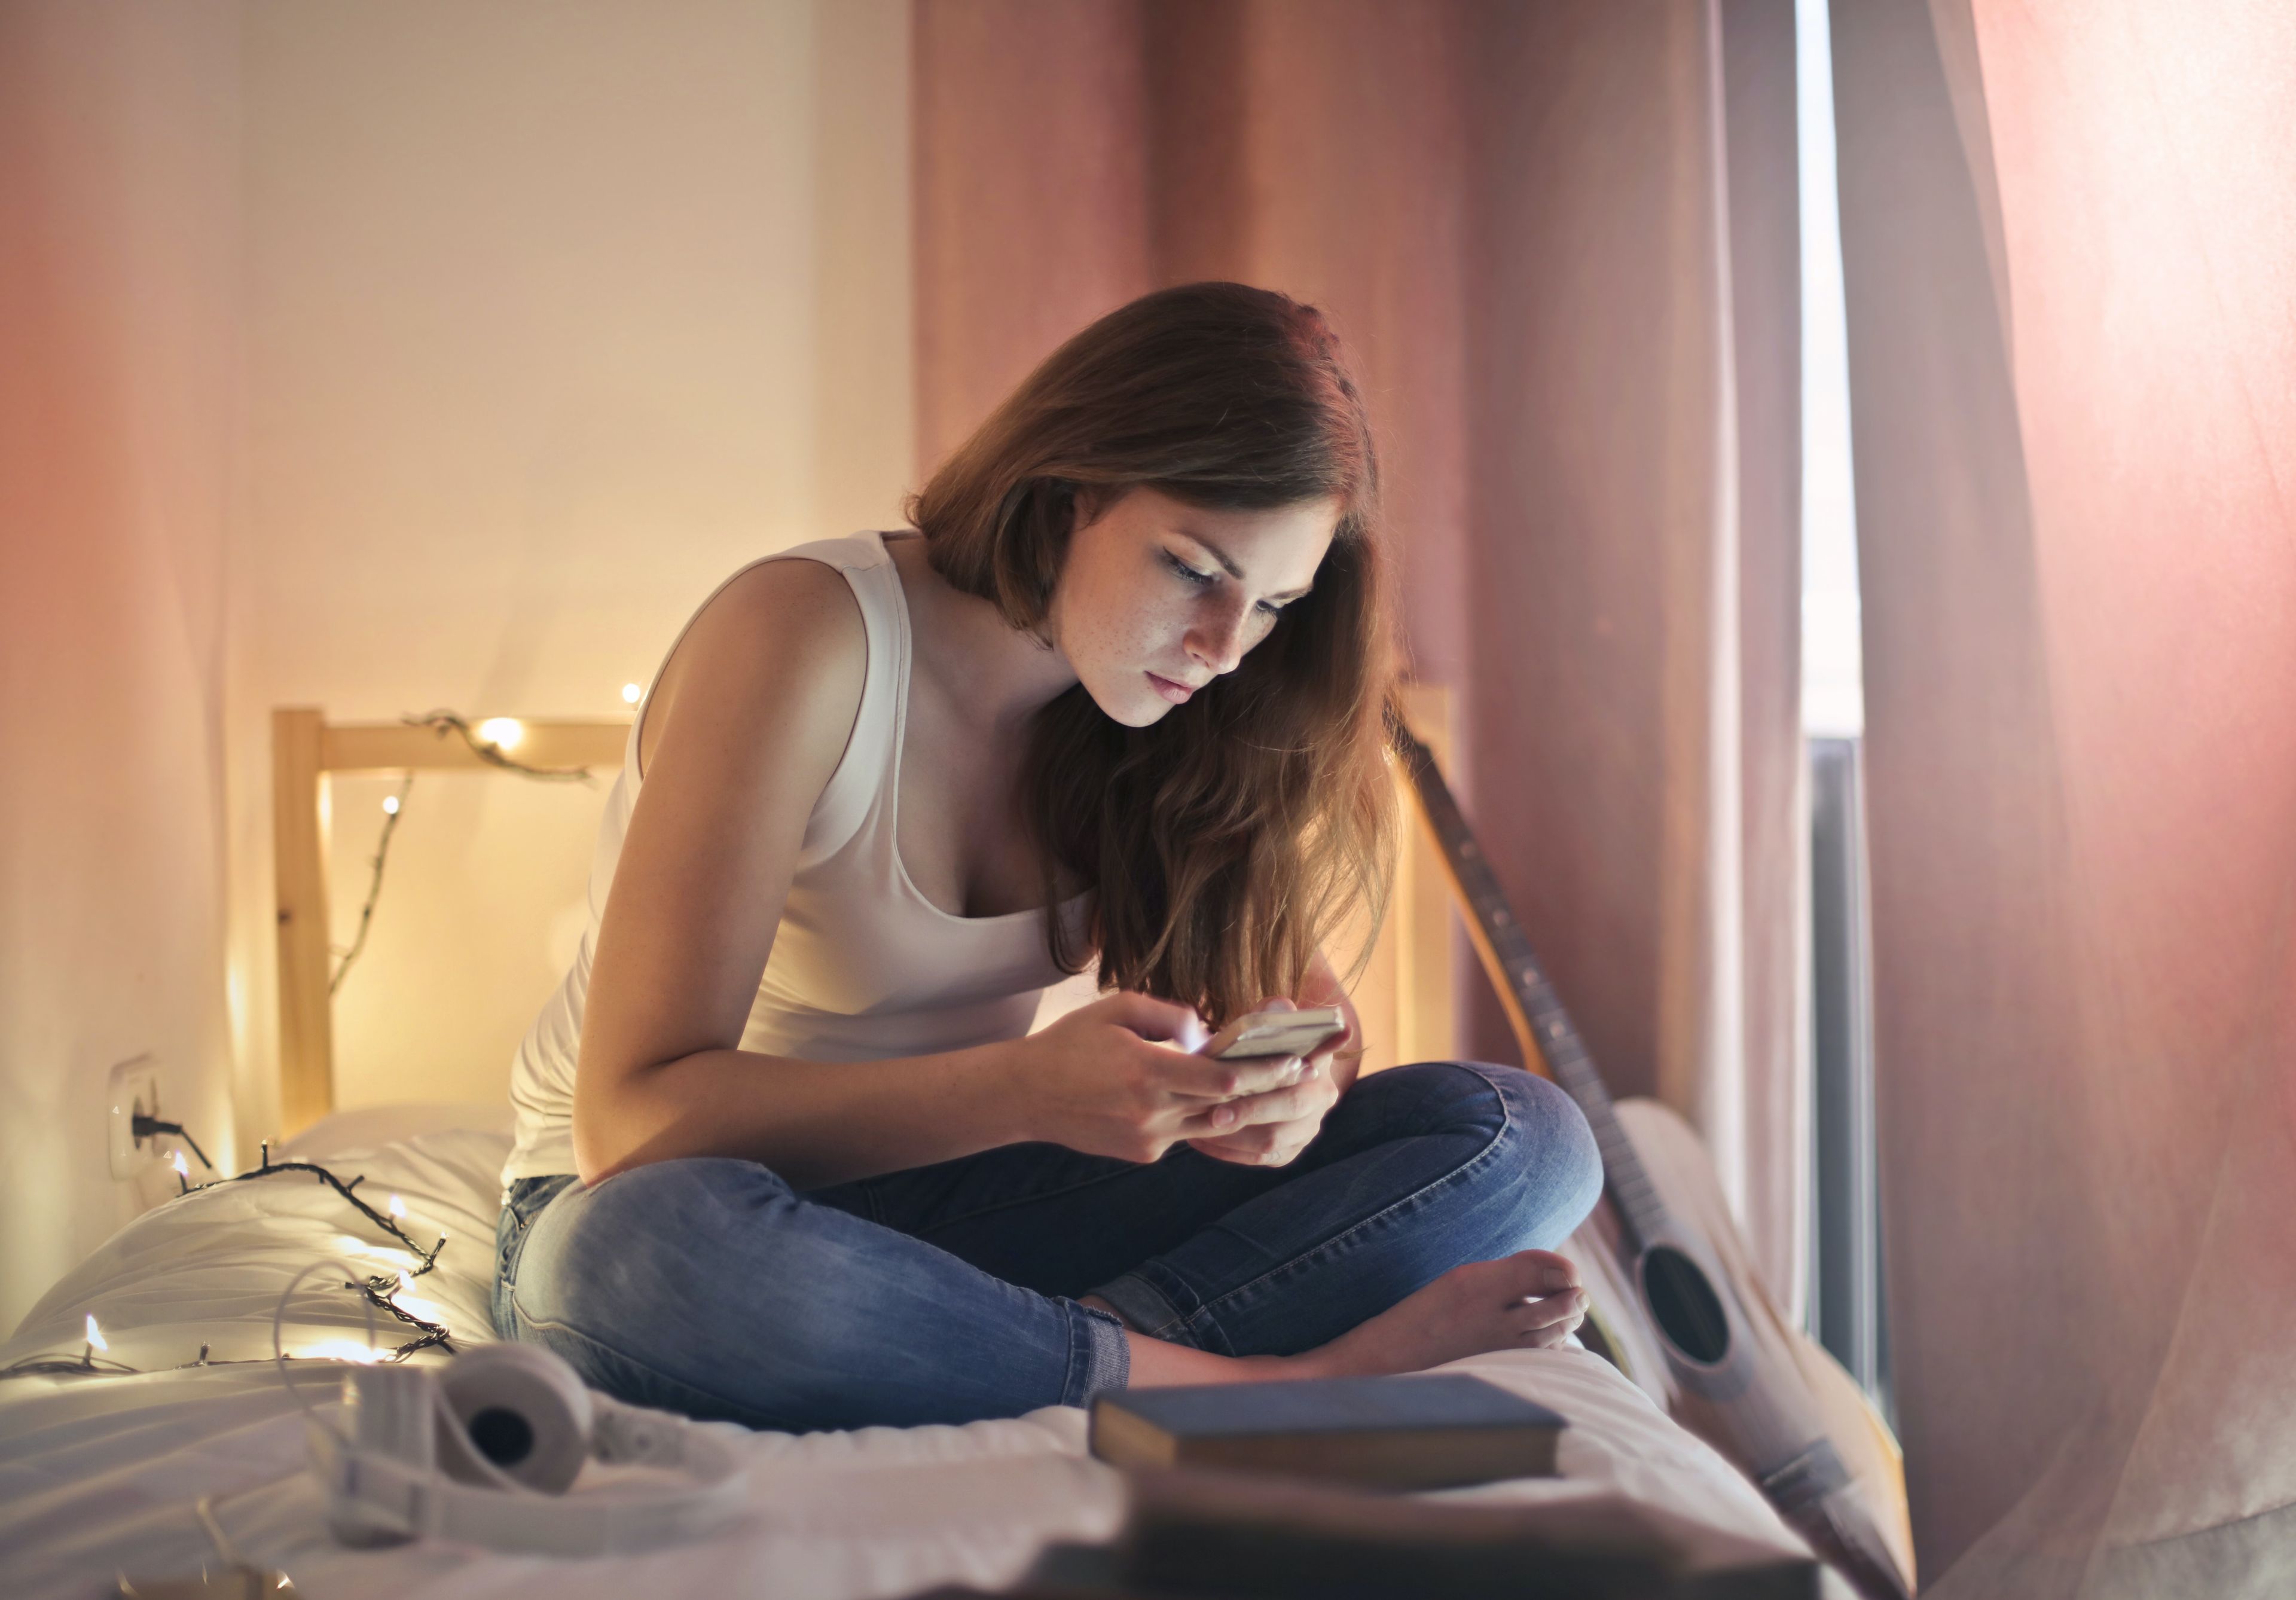 La relación entre el uso de la tecnología y el impacto en la salud mental no ha aumentado en los adolescentes, sugiere un estudio